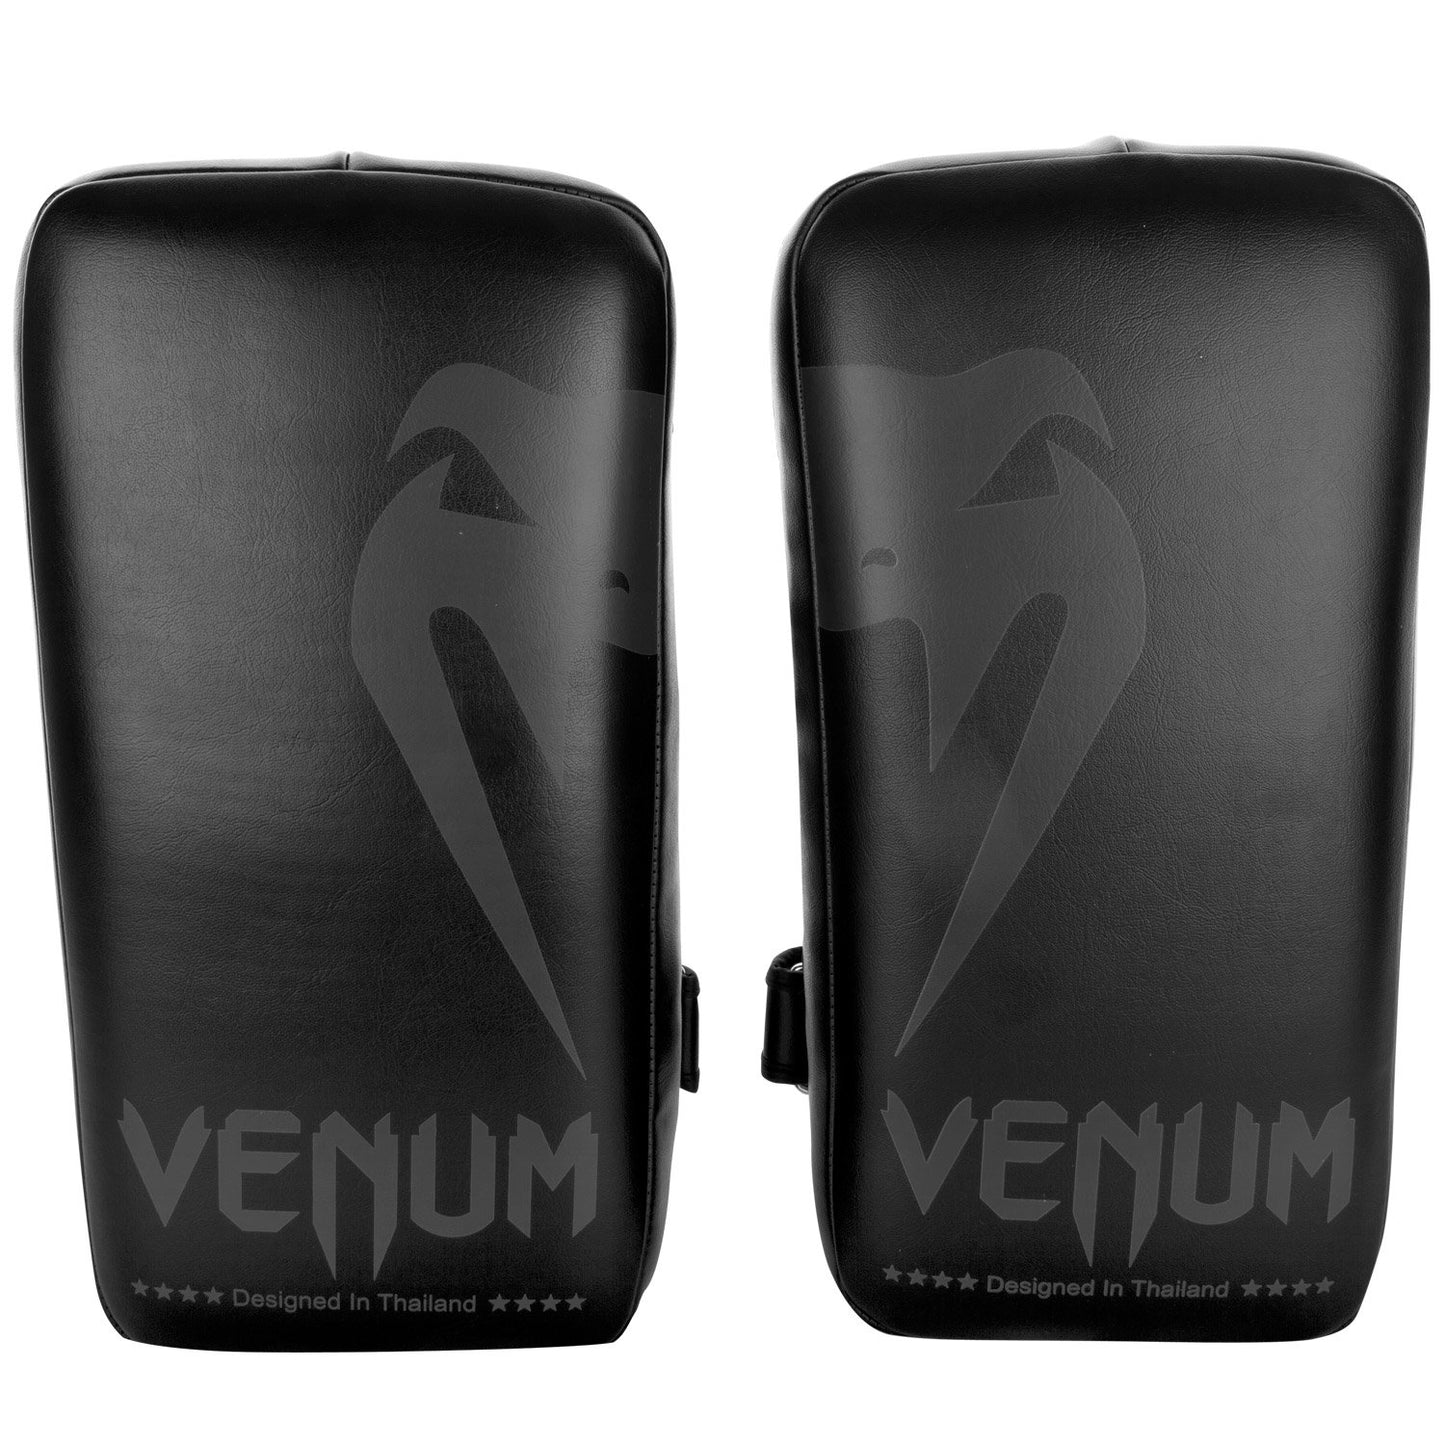 Venum Giant Kick Pads (Pair) - Black/Black - Best Price online Prokicksports.com